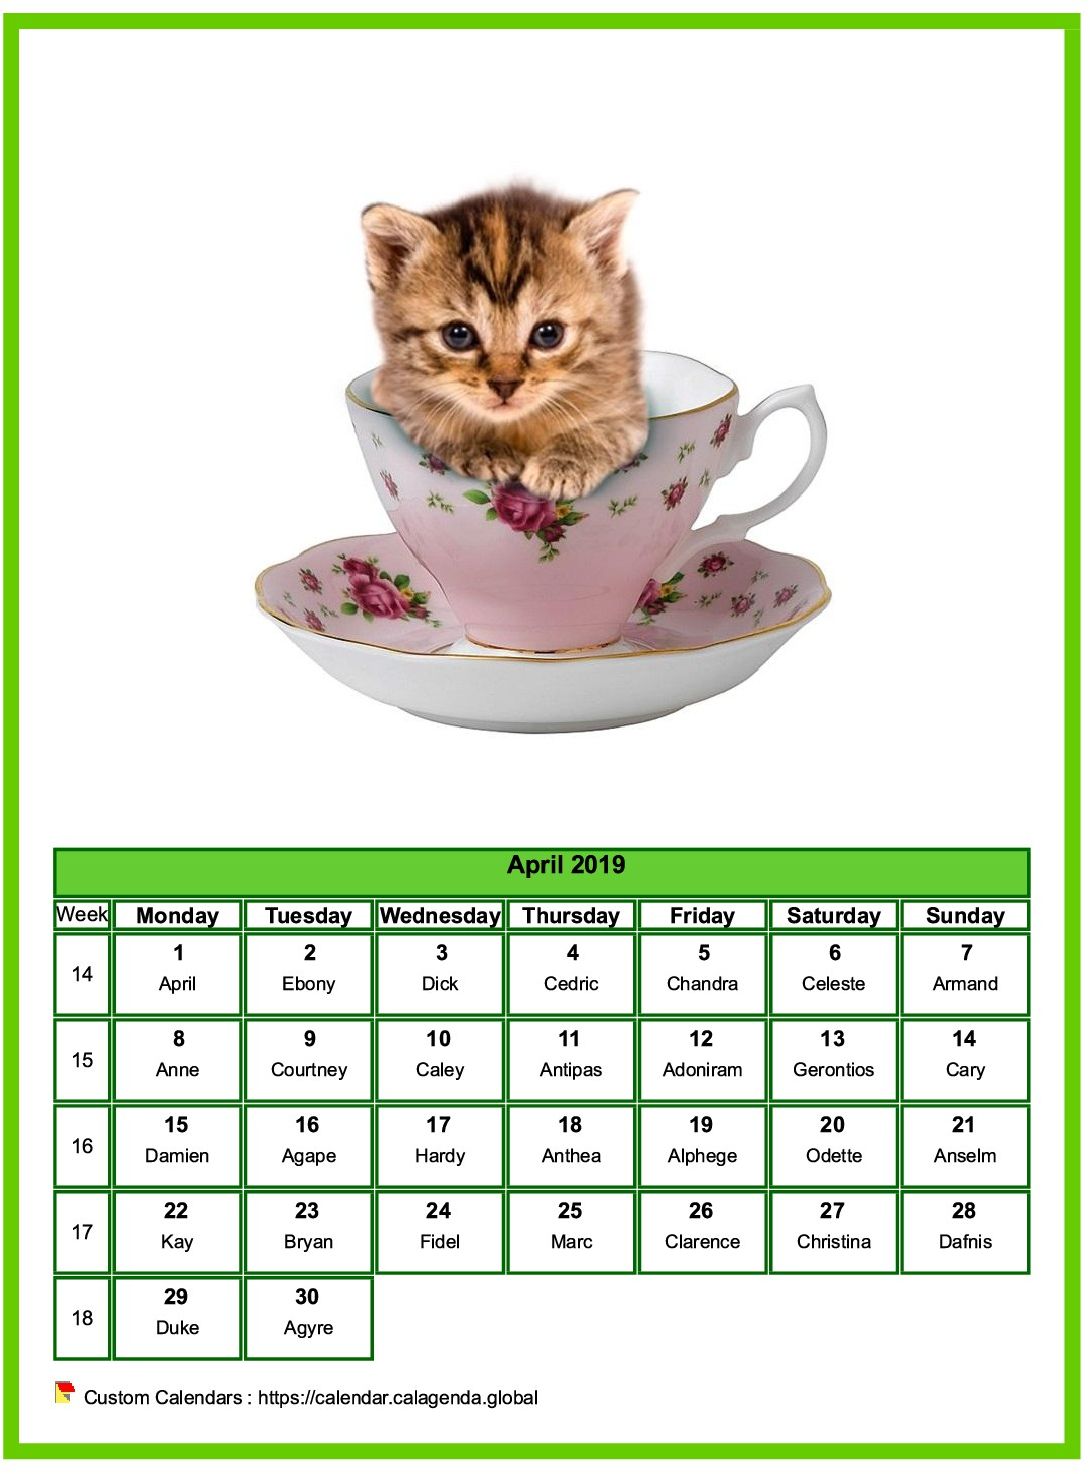 Calendar april 2019 cats